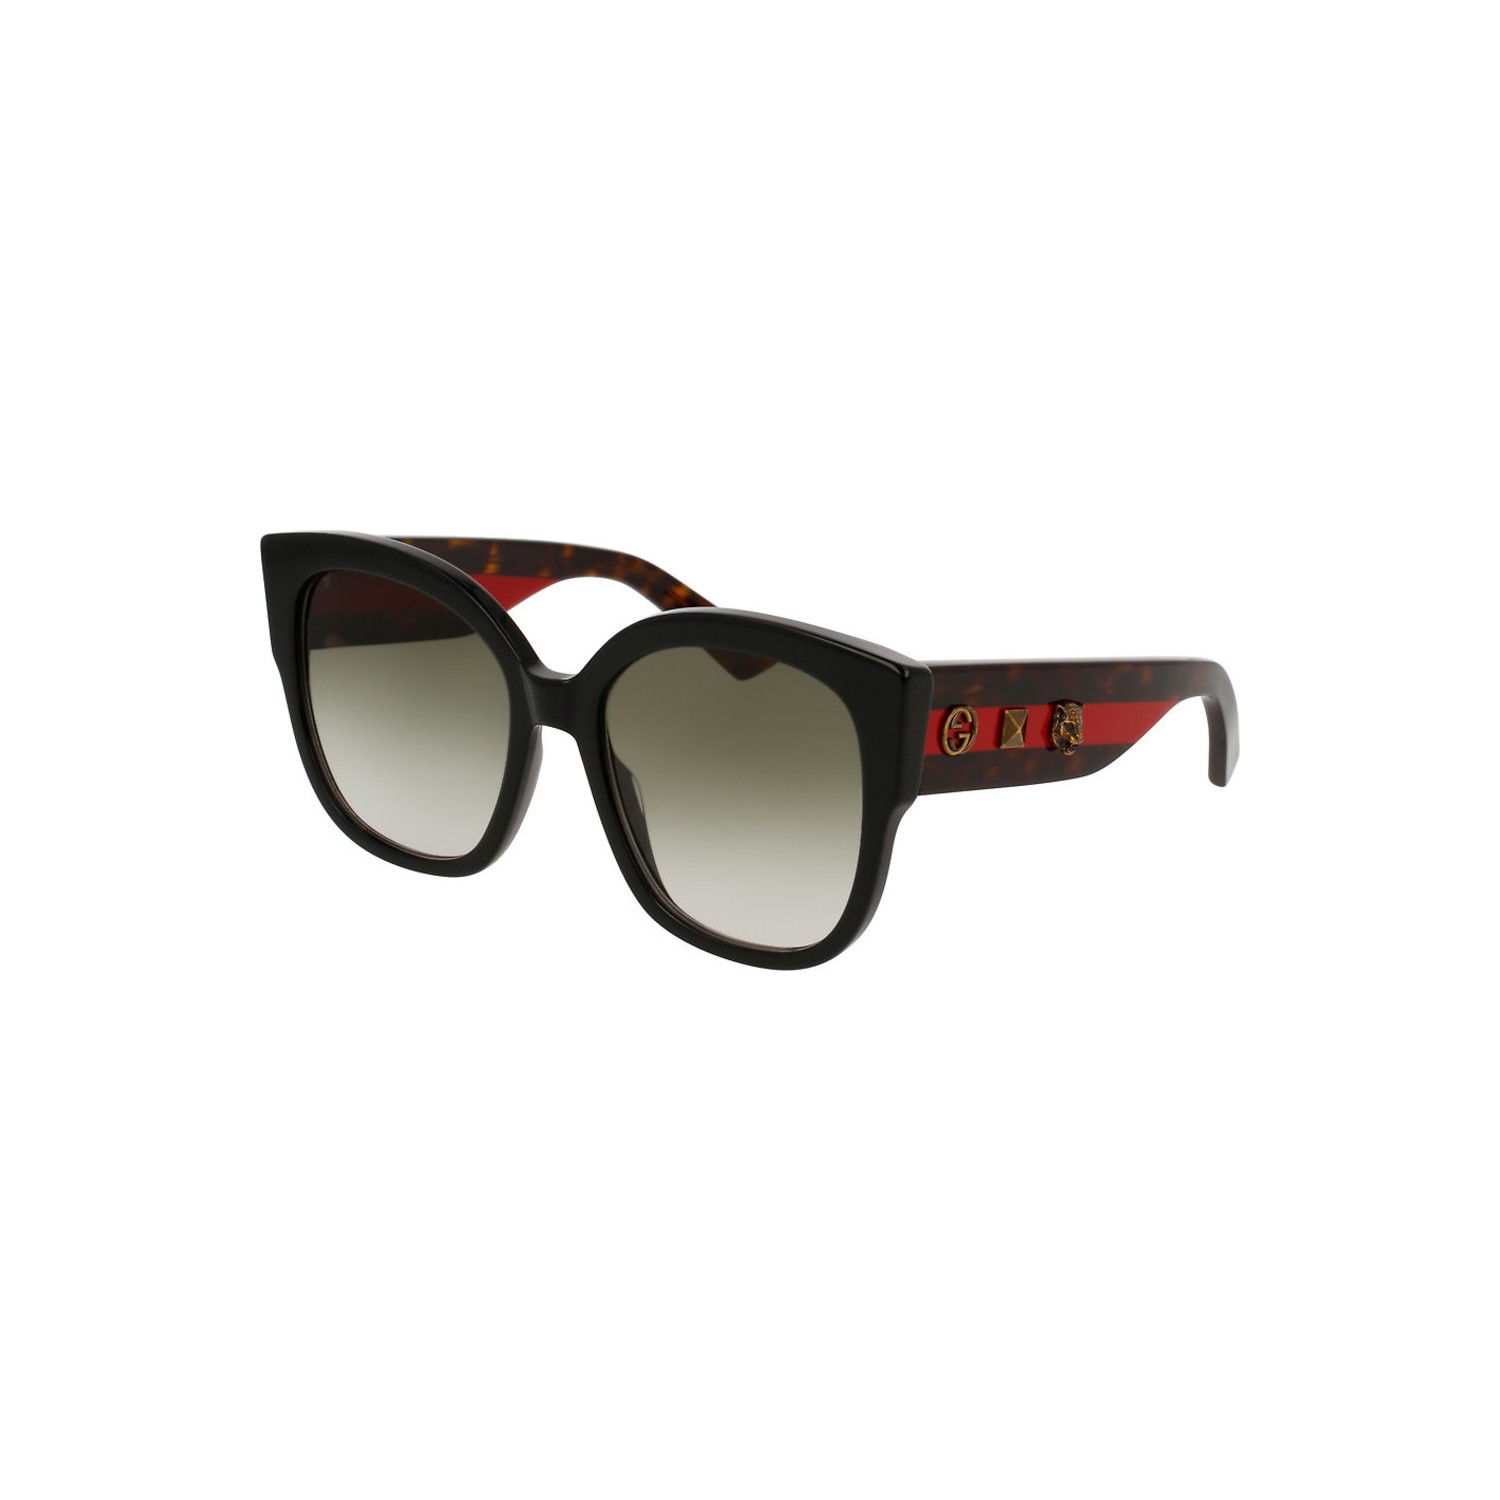 Gucci GG0059S (001) Kadın Güneş Gözlüğü Fiyatı - Taksit Seçenekleri